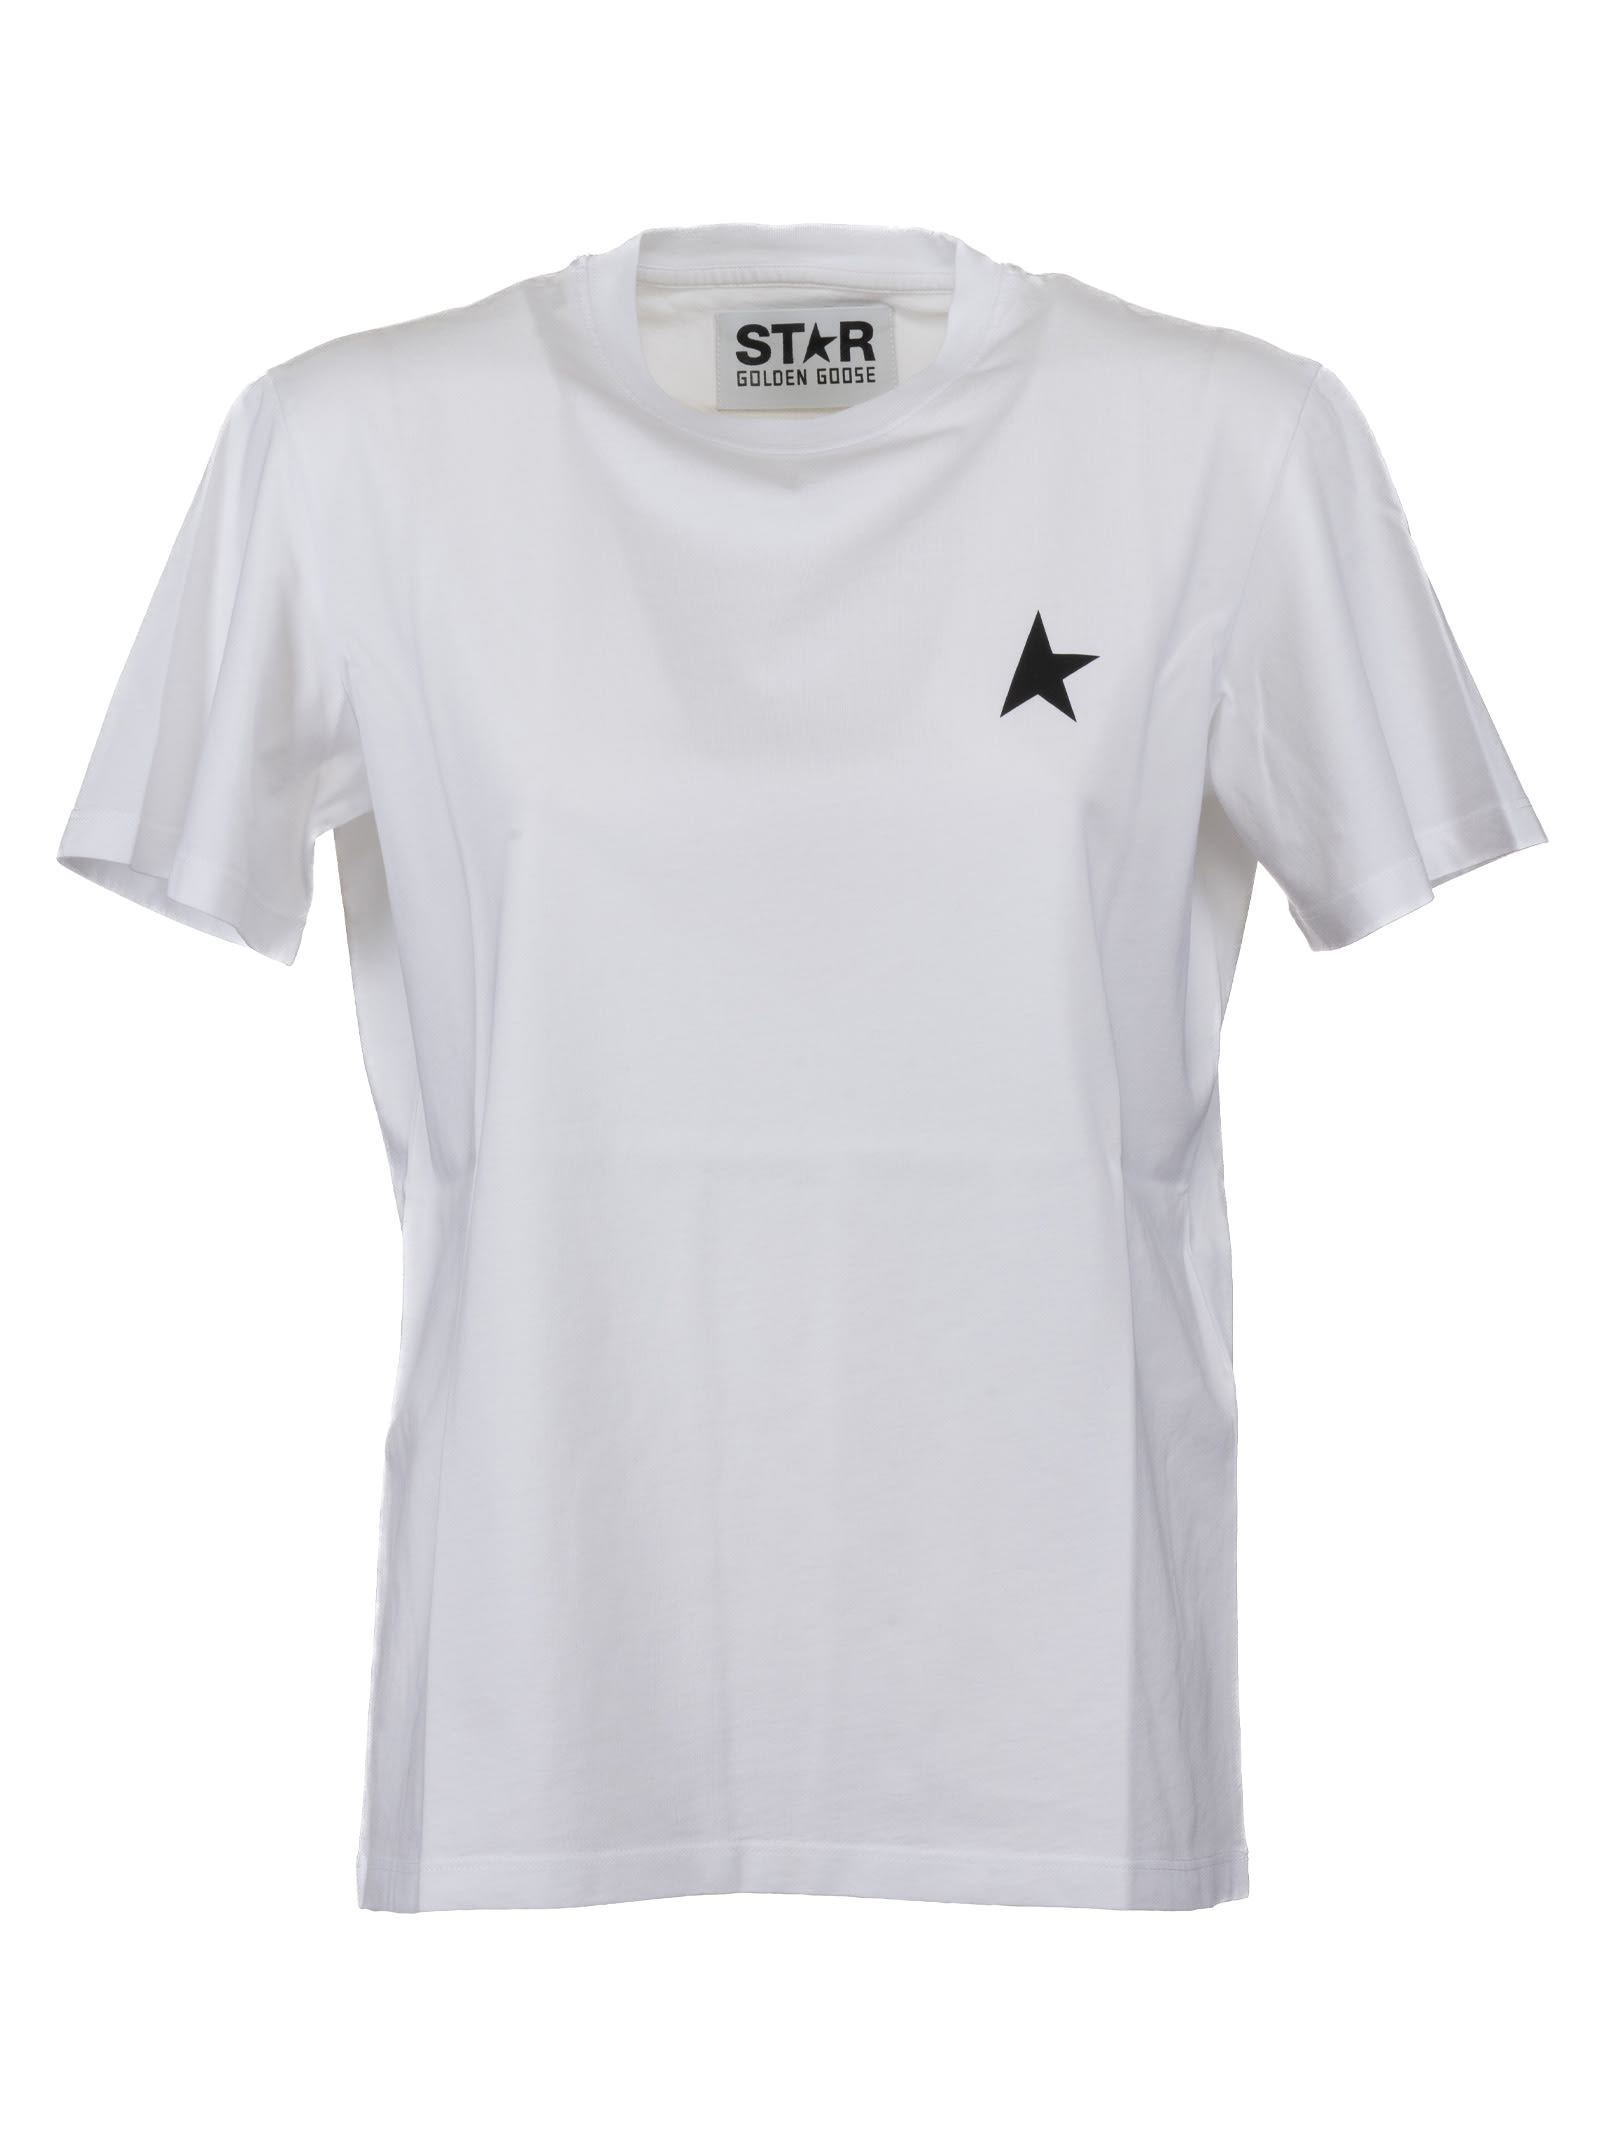 Golden Goose Star T-shirt